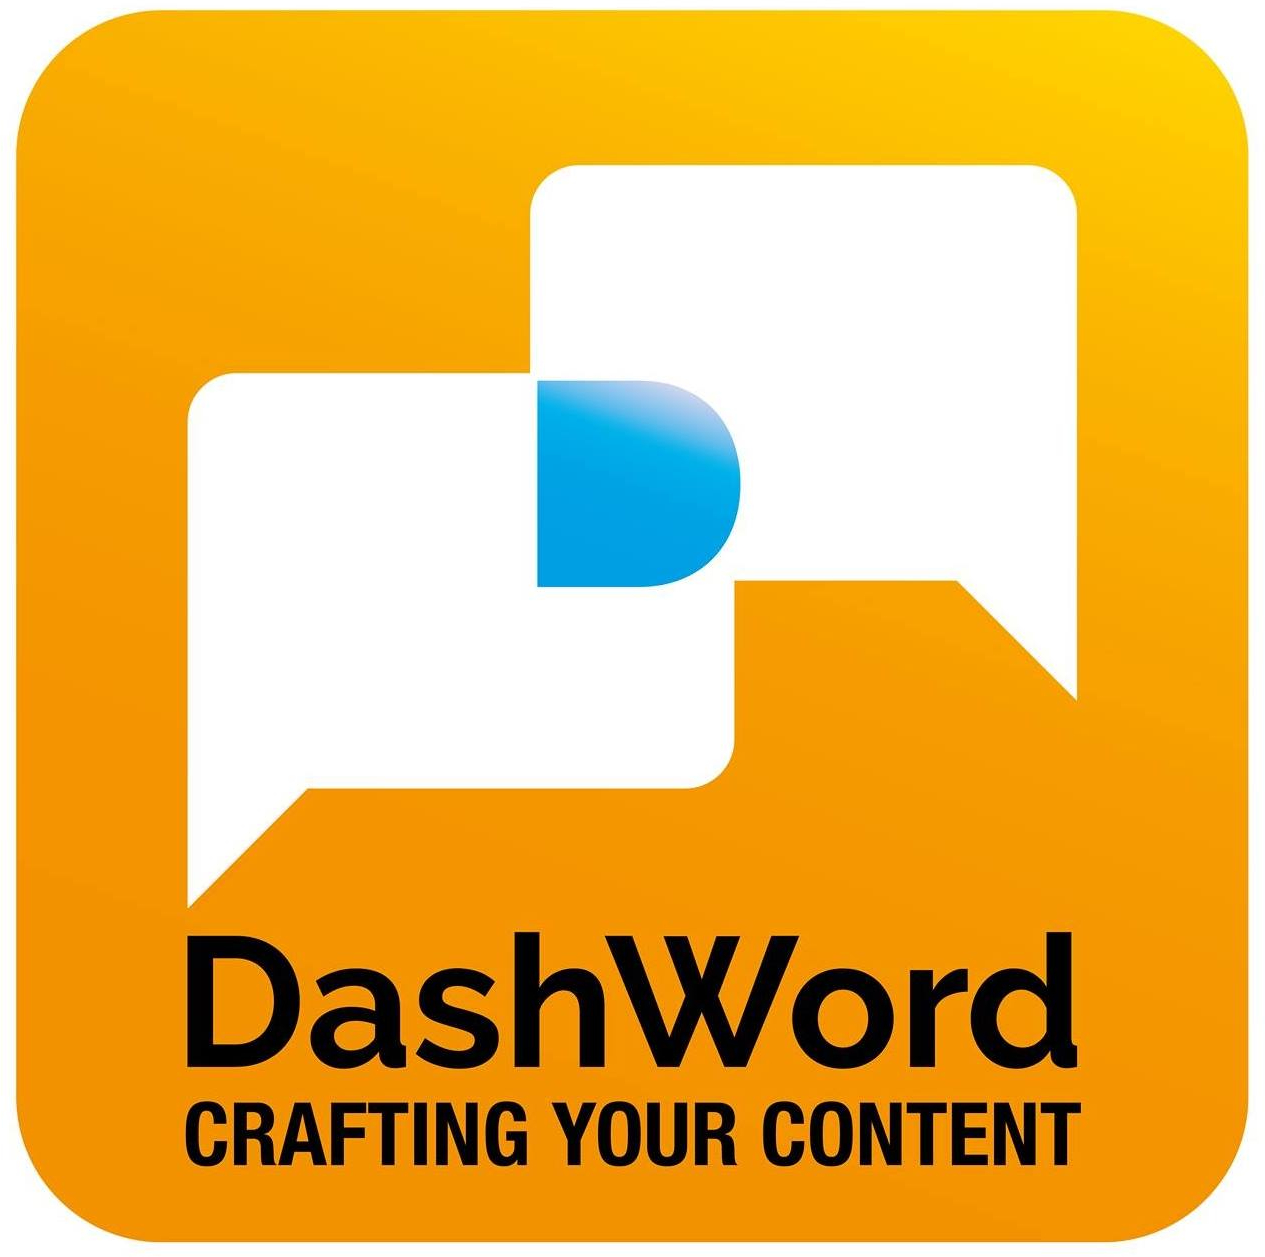 DashWord FZ LLC